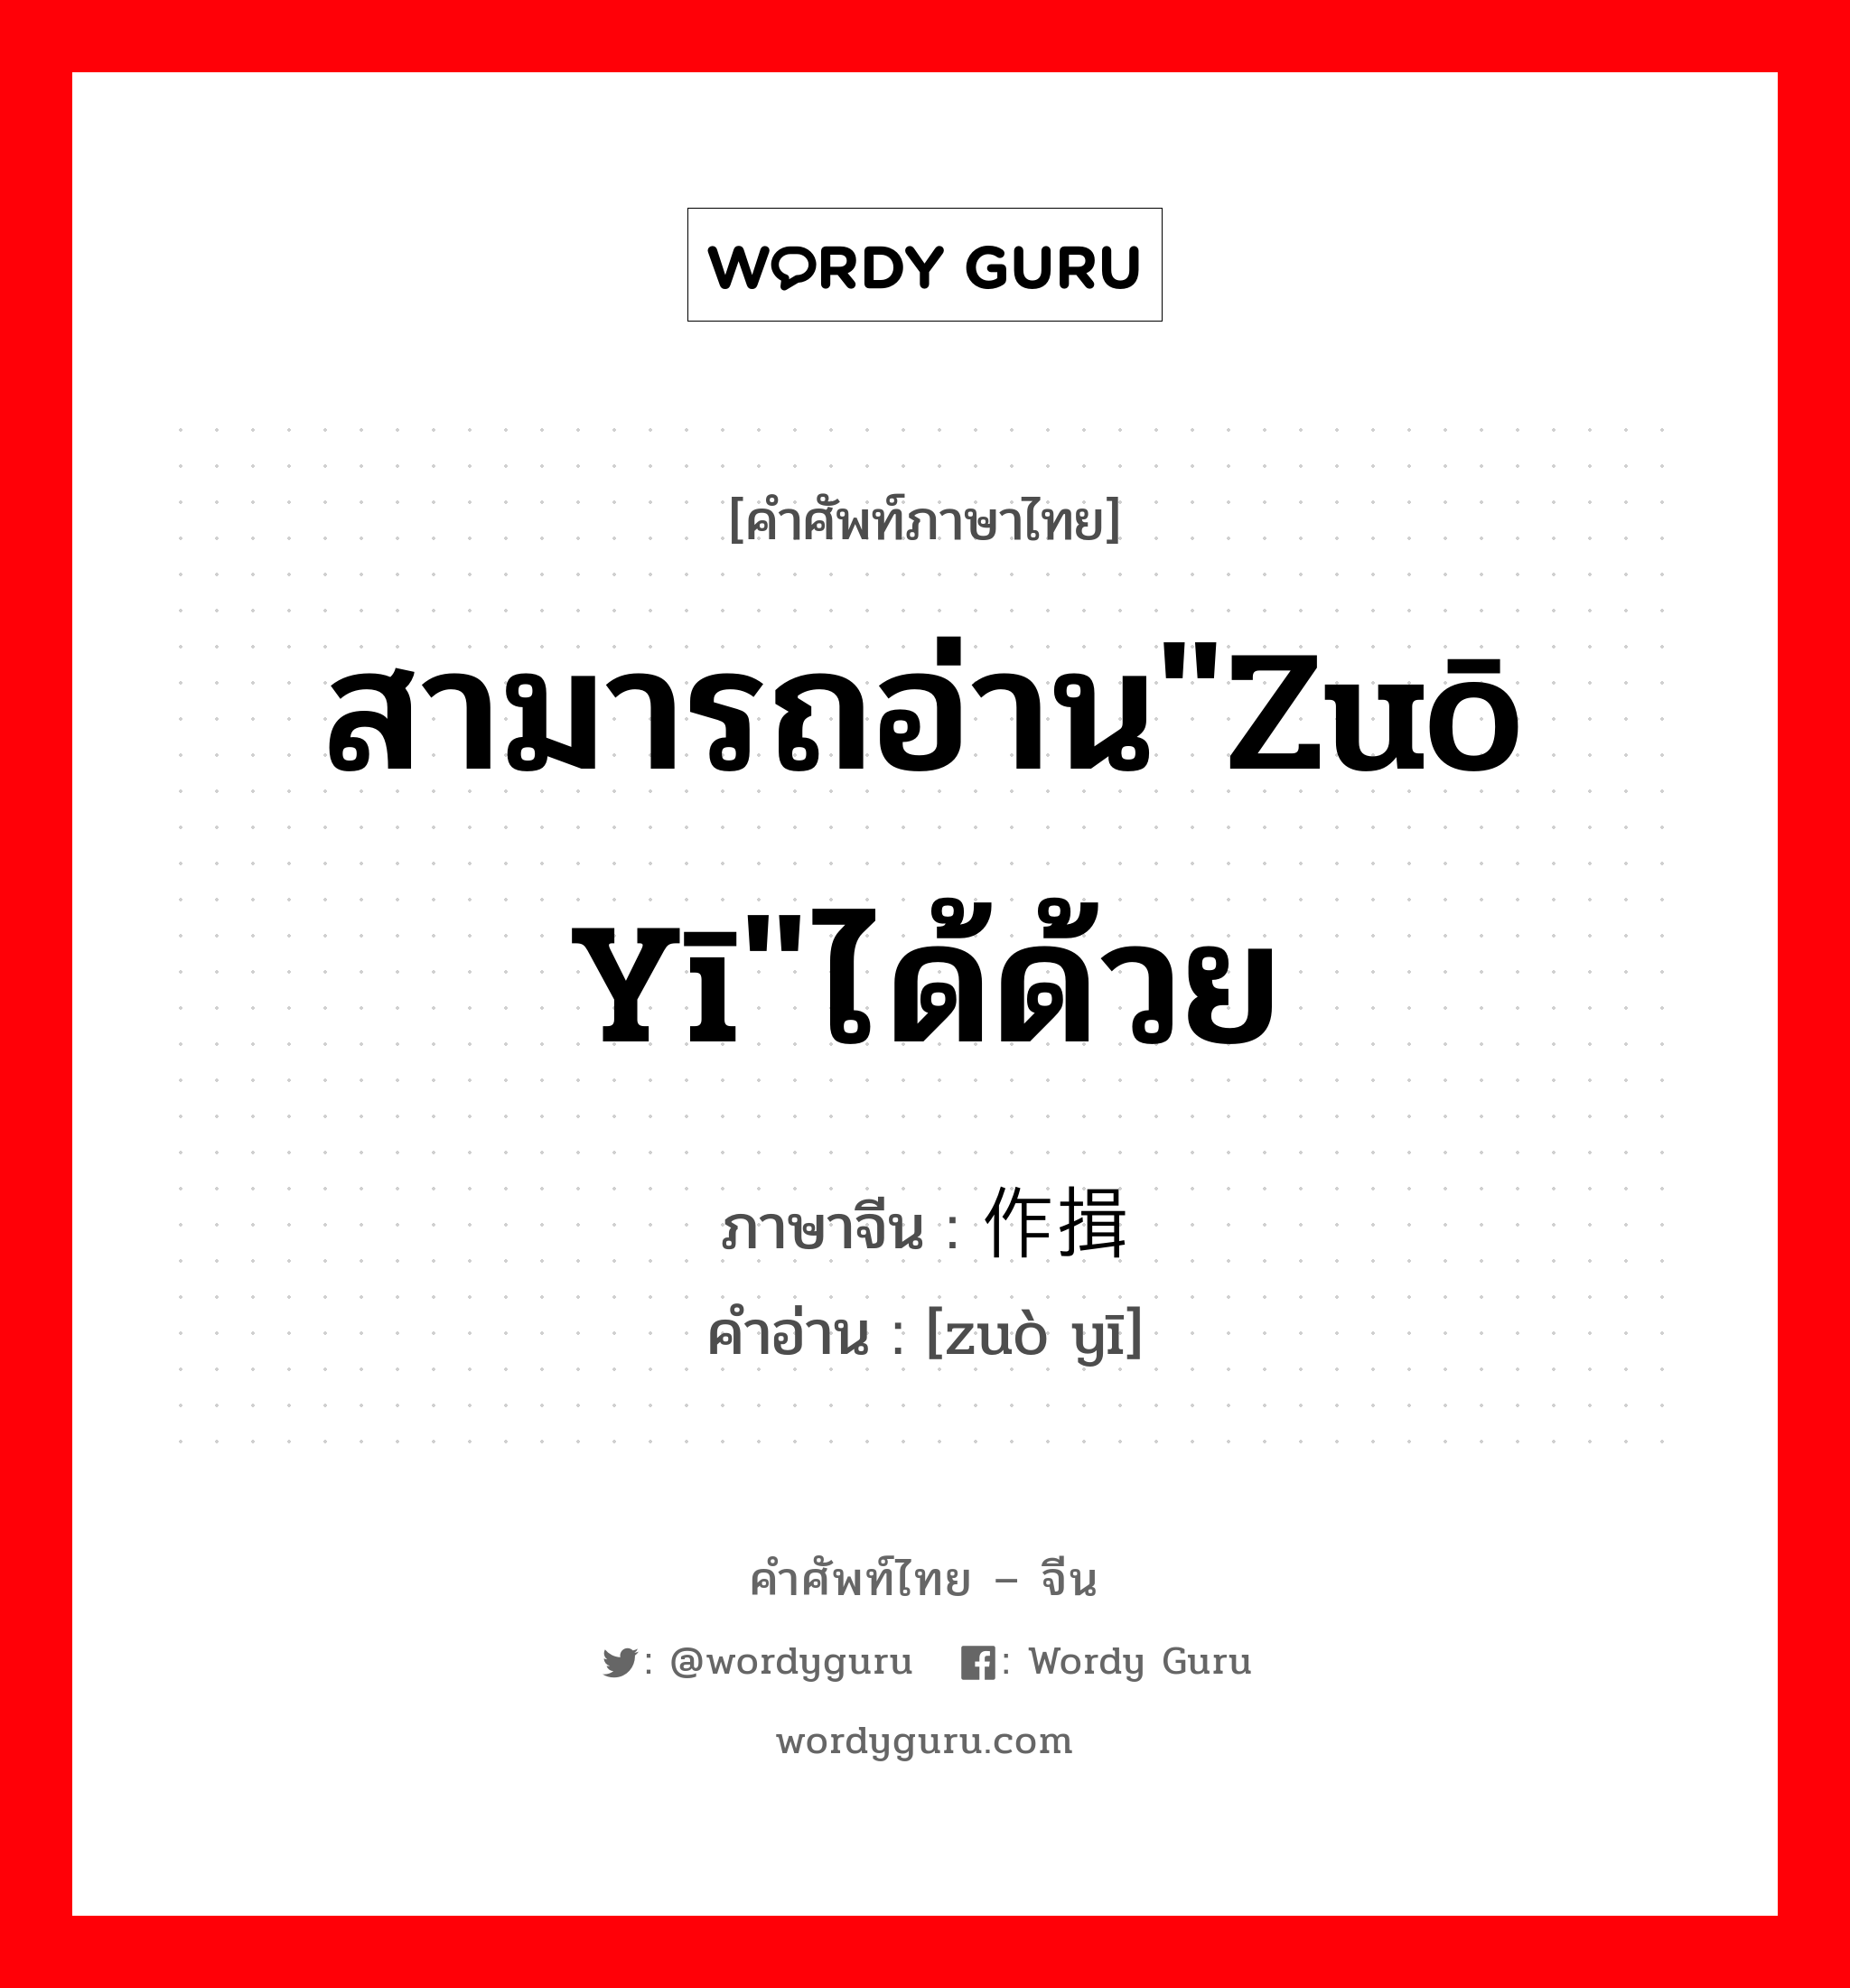 สามารถอ่าน"zuō yī"ได้ด้วย ภาษาจีนคืออะไร, คำศัพท์ภาษาไทย - จีน สามารถอ่าน"zuō yī"ได้ด้วย ภาษาจีน 作揖 คำอ่าน [zuò yī]